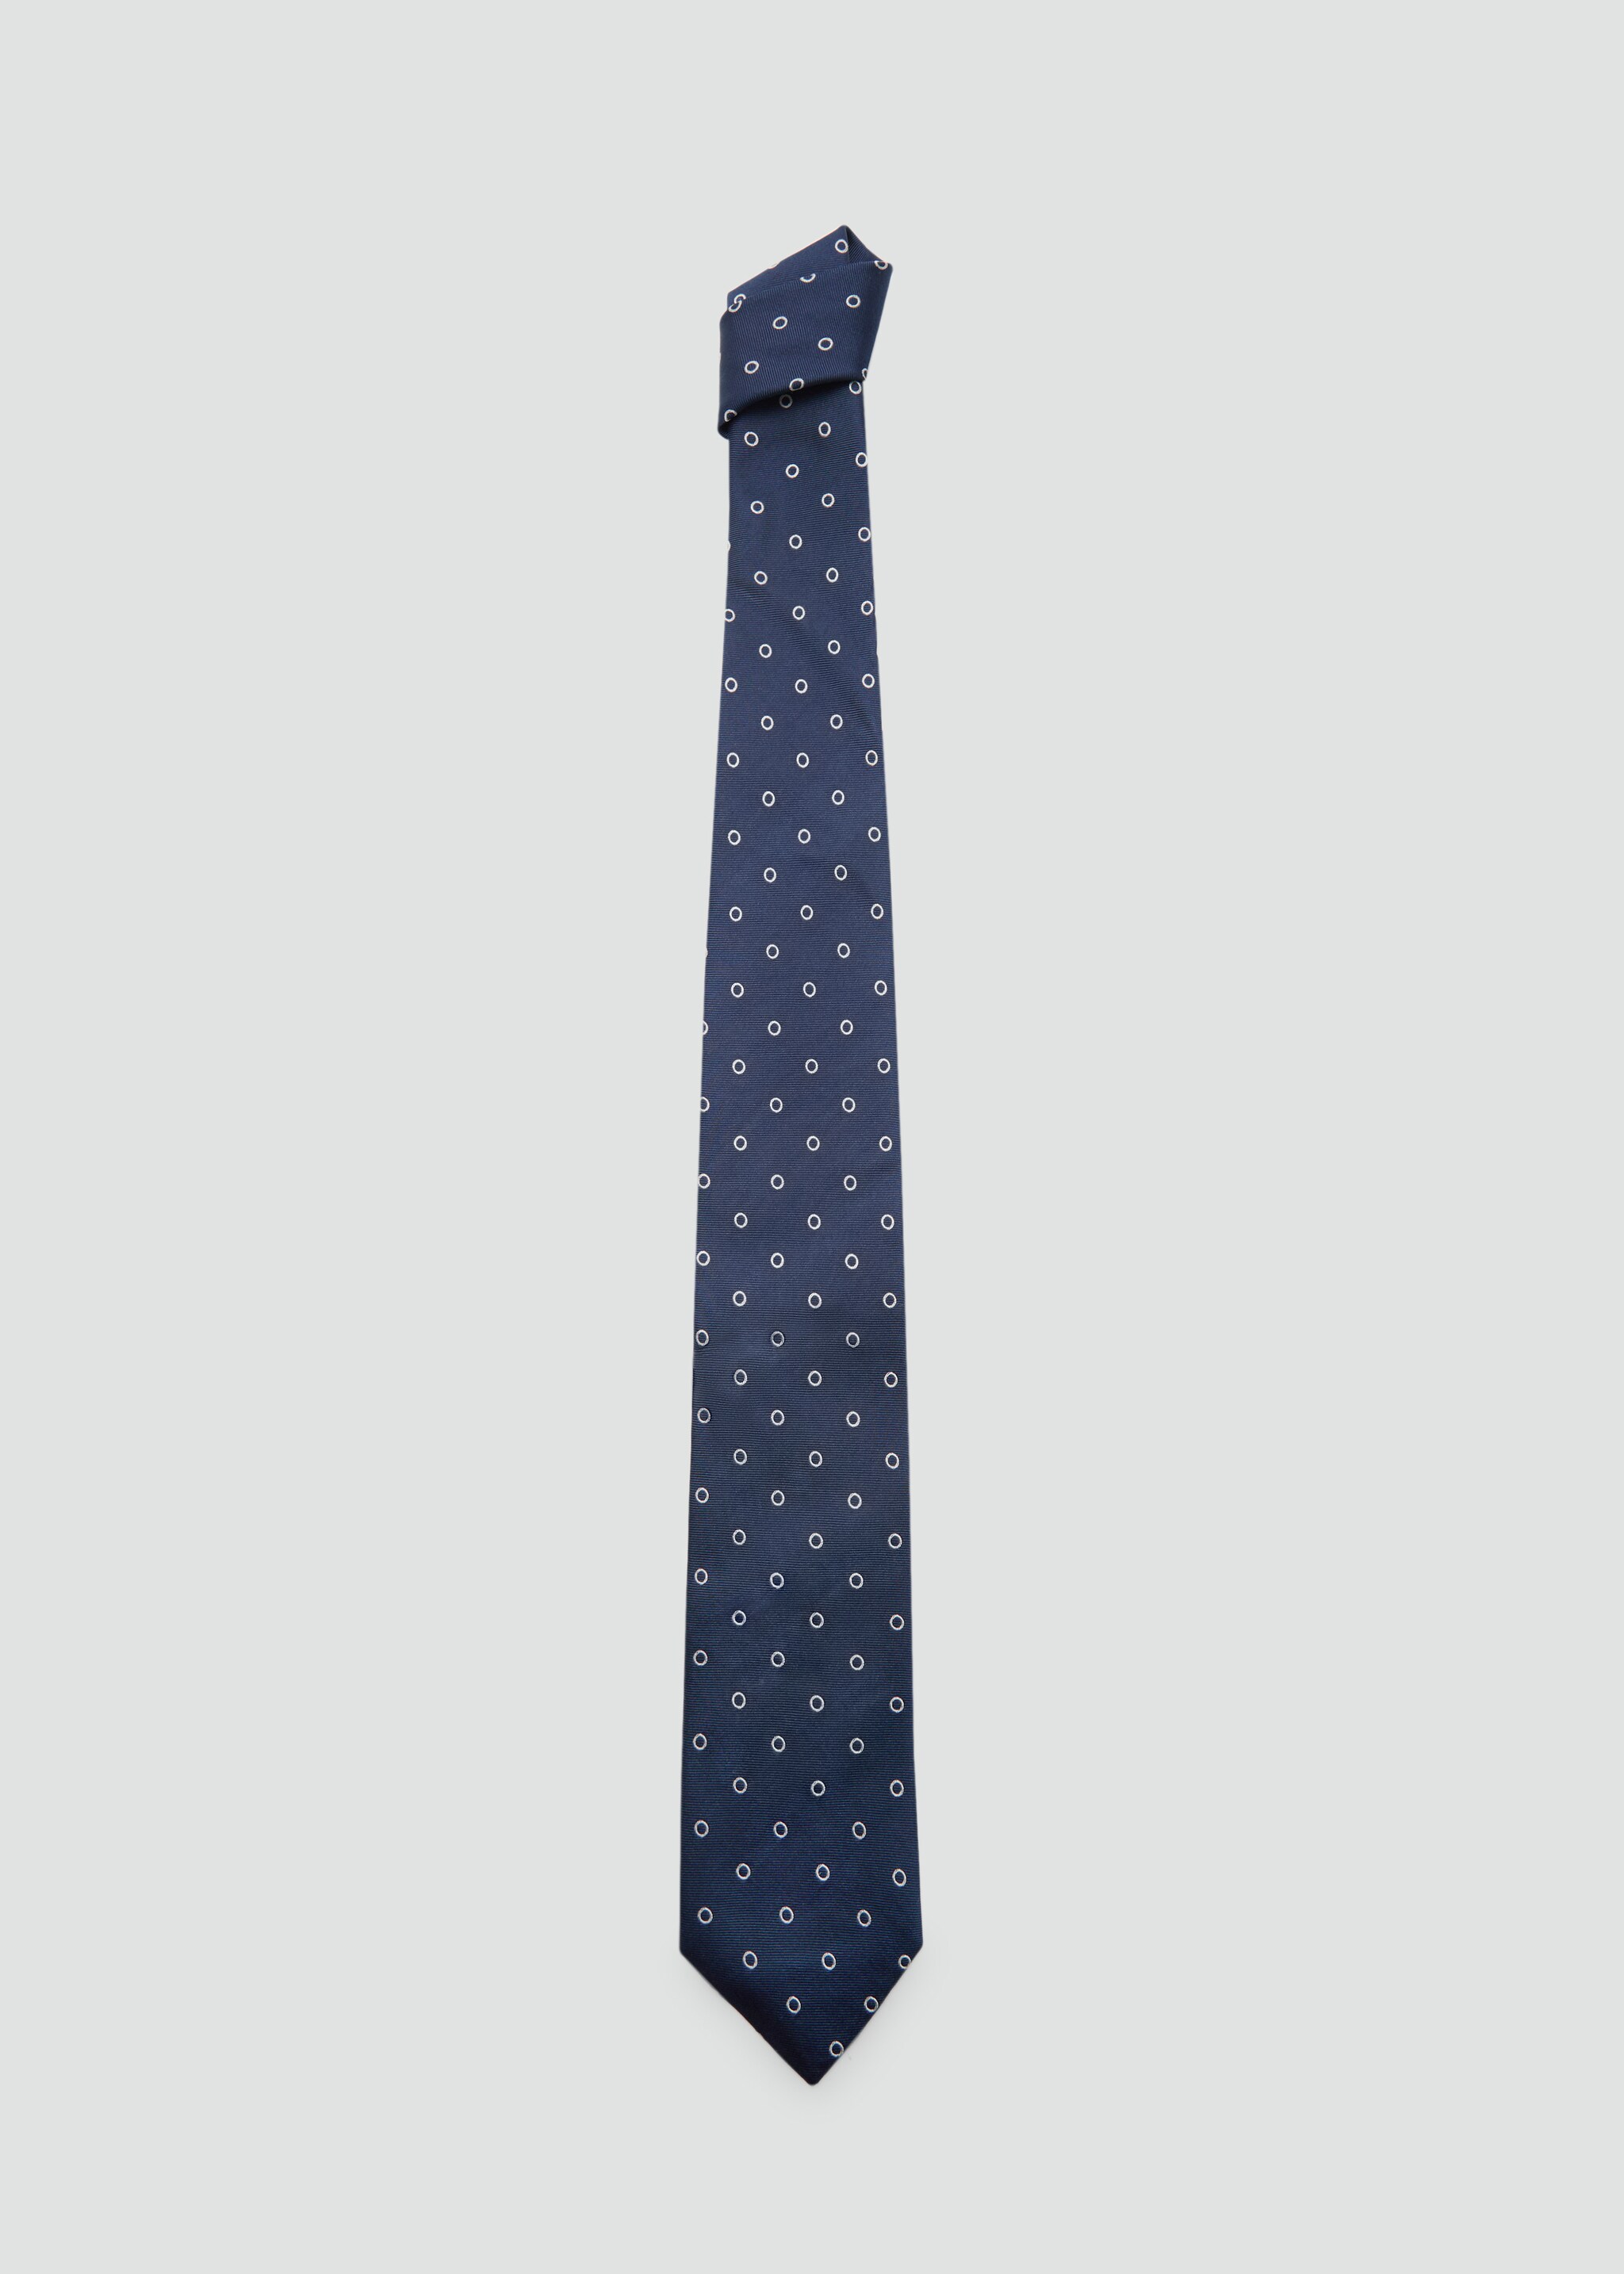 Cravate basic8 - Article sans modèle